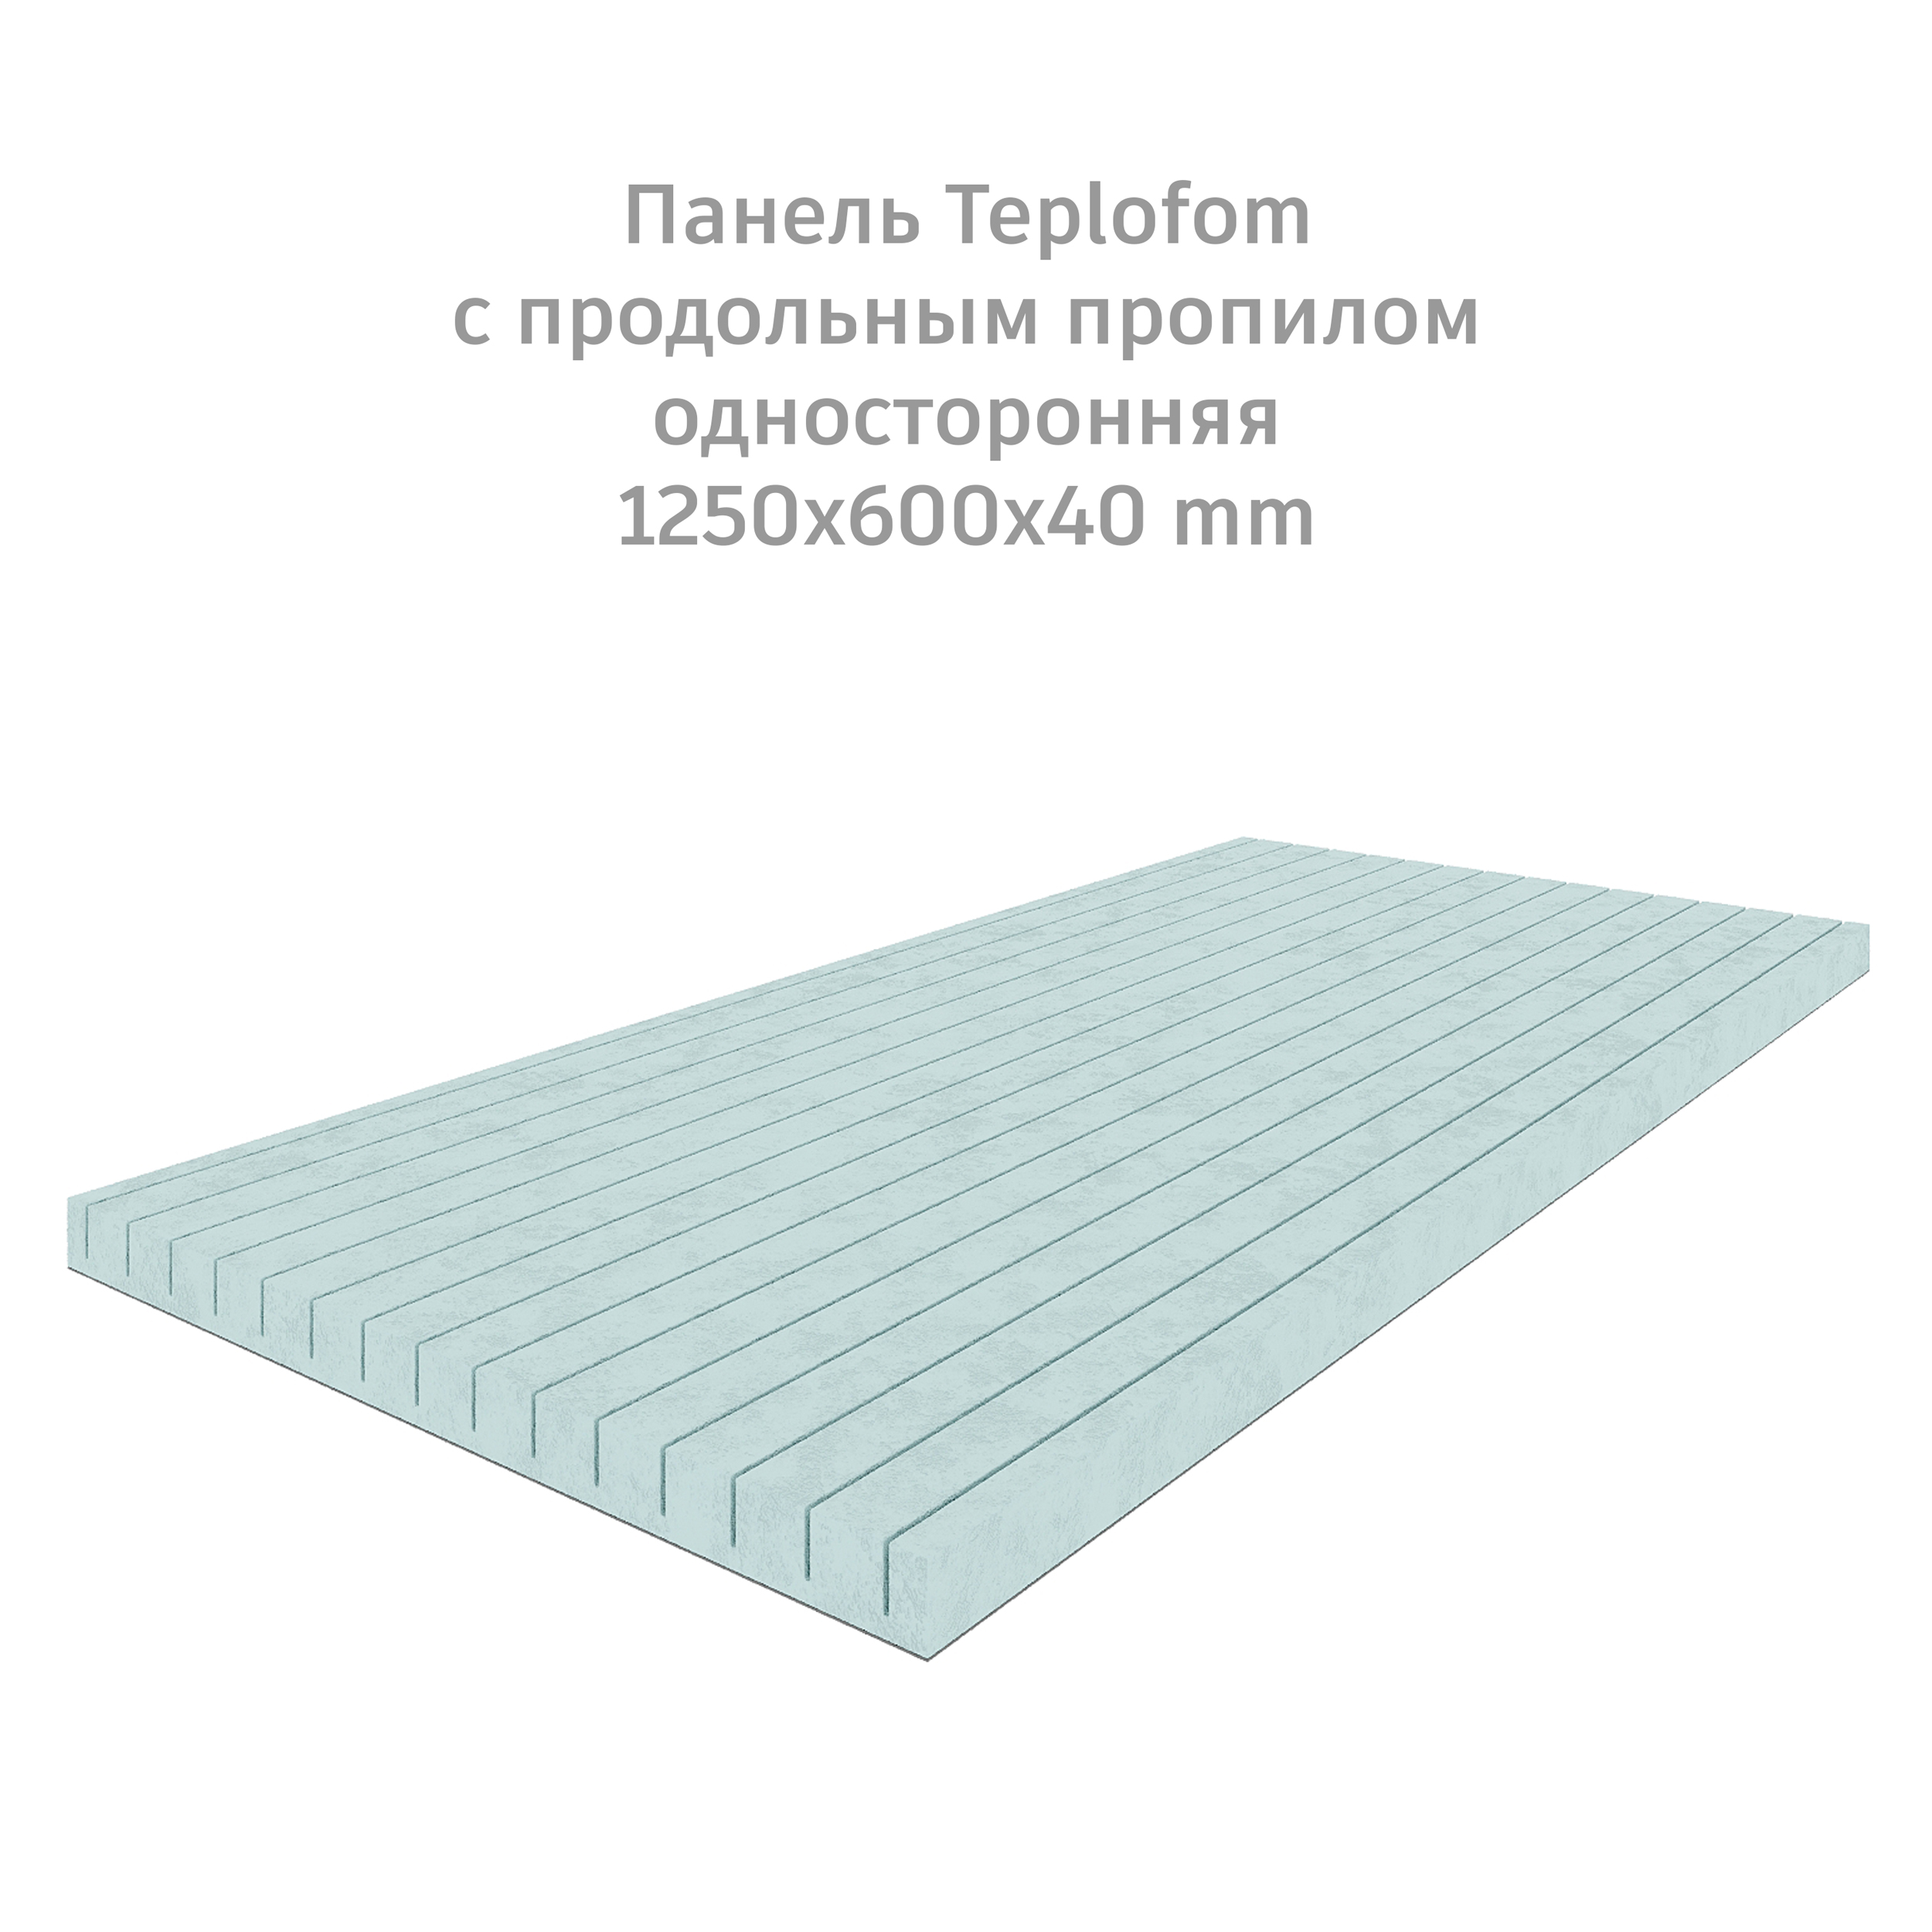 фото Теплоизоляционная панель teplofom+40 xps-01 (односторонний слой)1250x600x40мм продольный